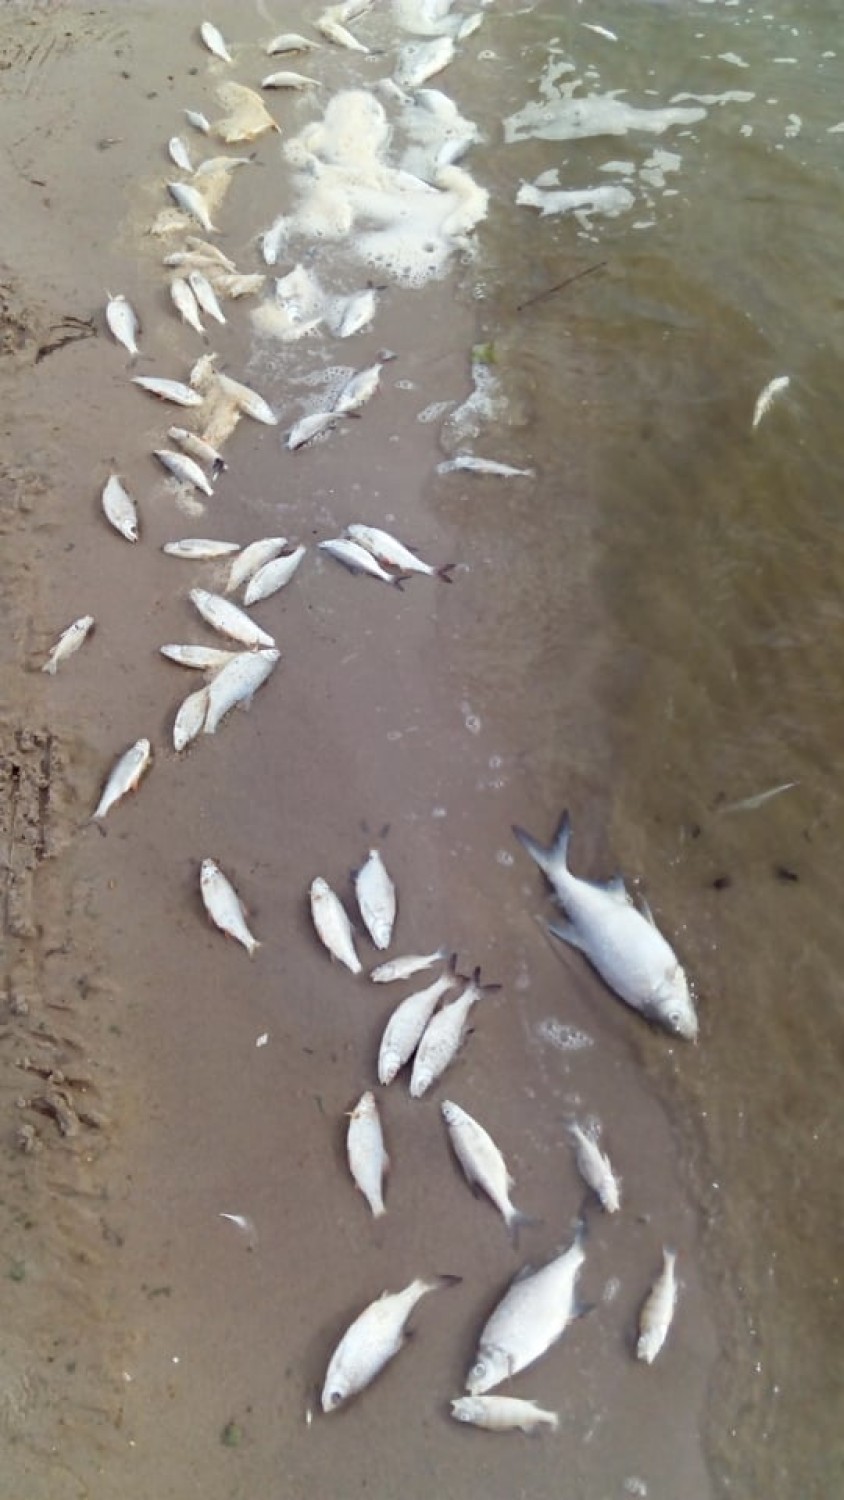 Ponownie setki śniętych ryb w jeziorze Błędno w Zbąszyniu!